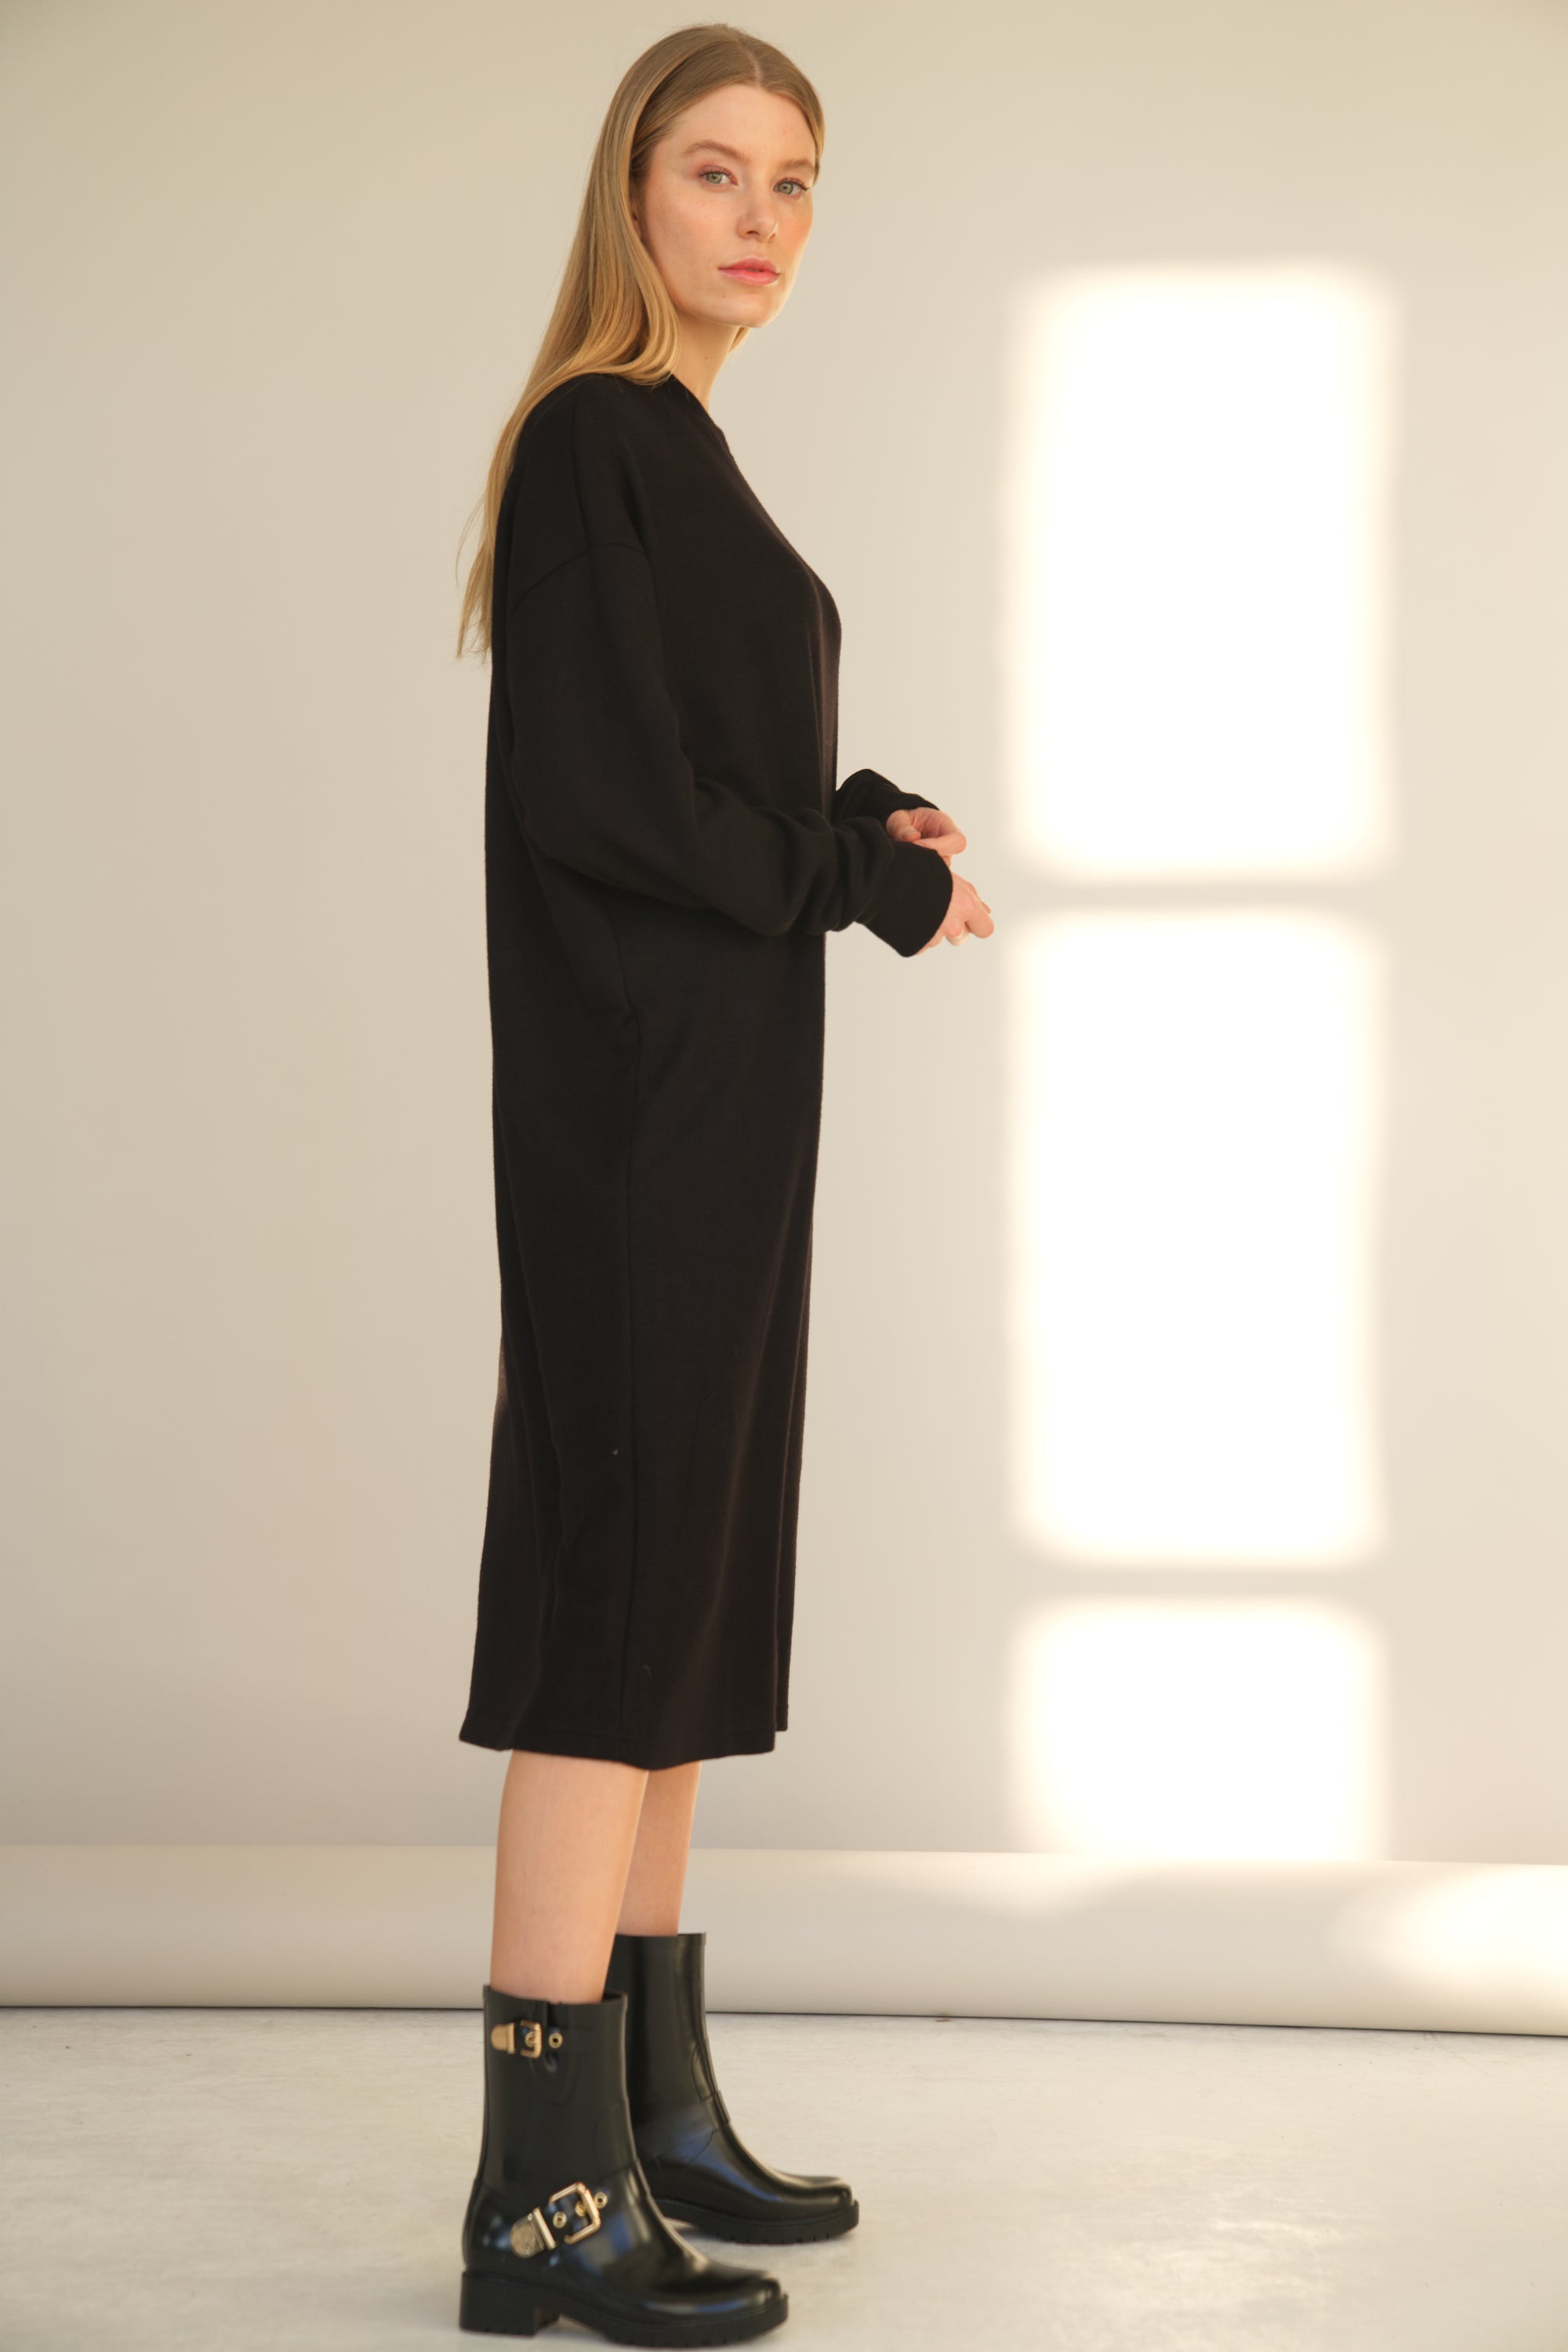 Unser Model trägt ein Strickkleid mit langarm in schwarz von Bellasor. Das Model ist von der Seite zu sehen und trägt schwarze Stiefel.